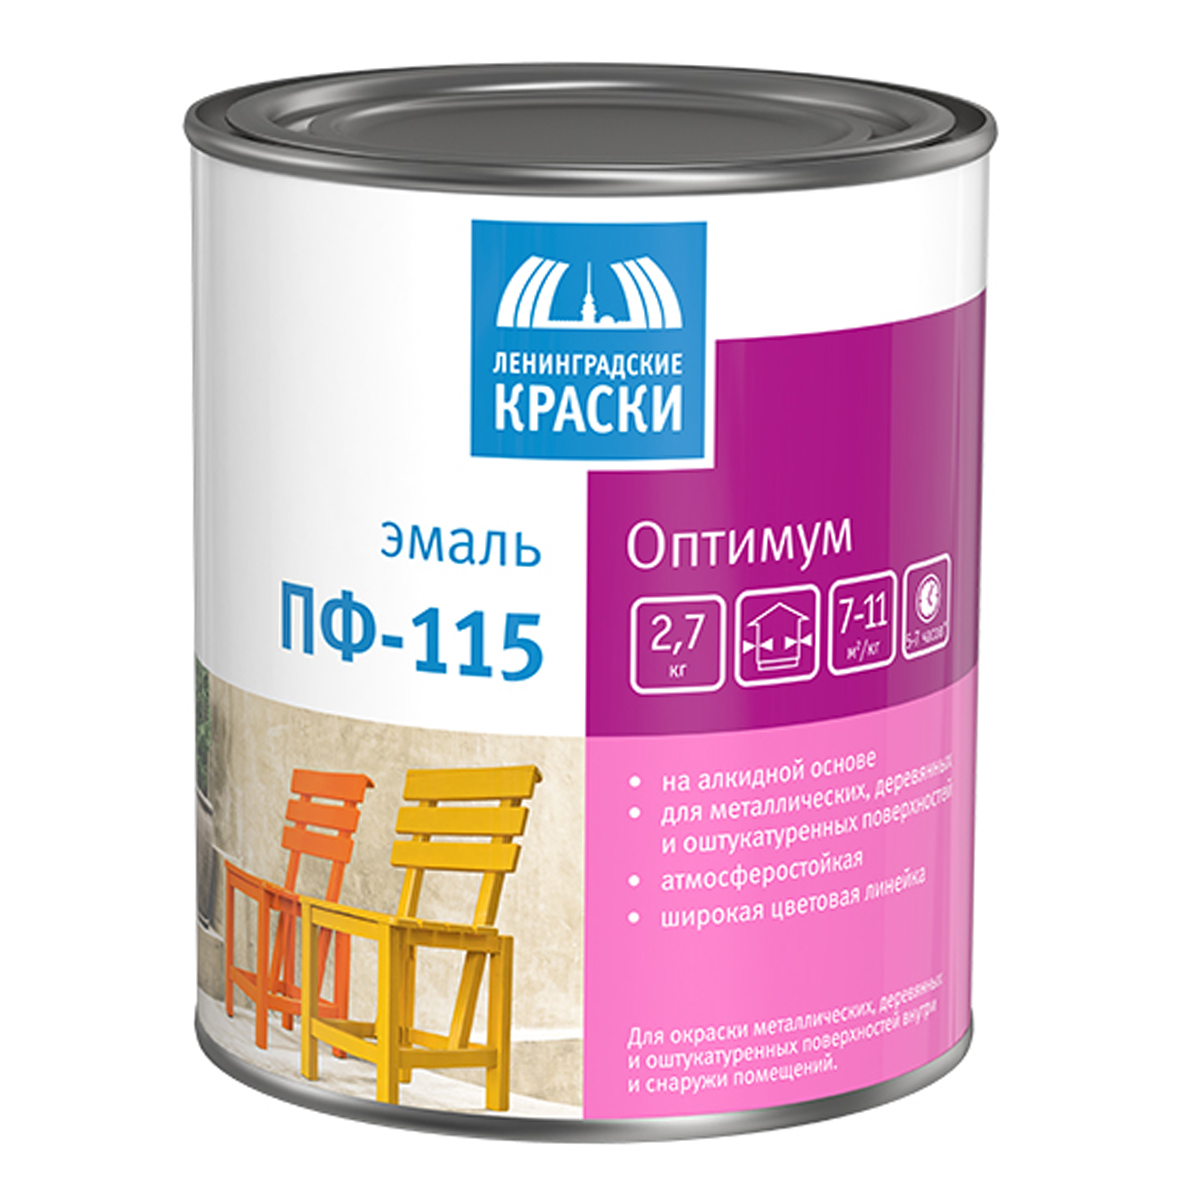 Эмаль ПФ-115 Ленинградские краски Оптимум, алкидная, глянцевая, 2,7 кг, черная